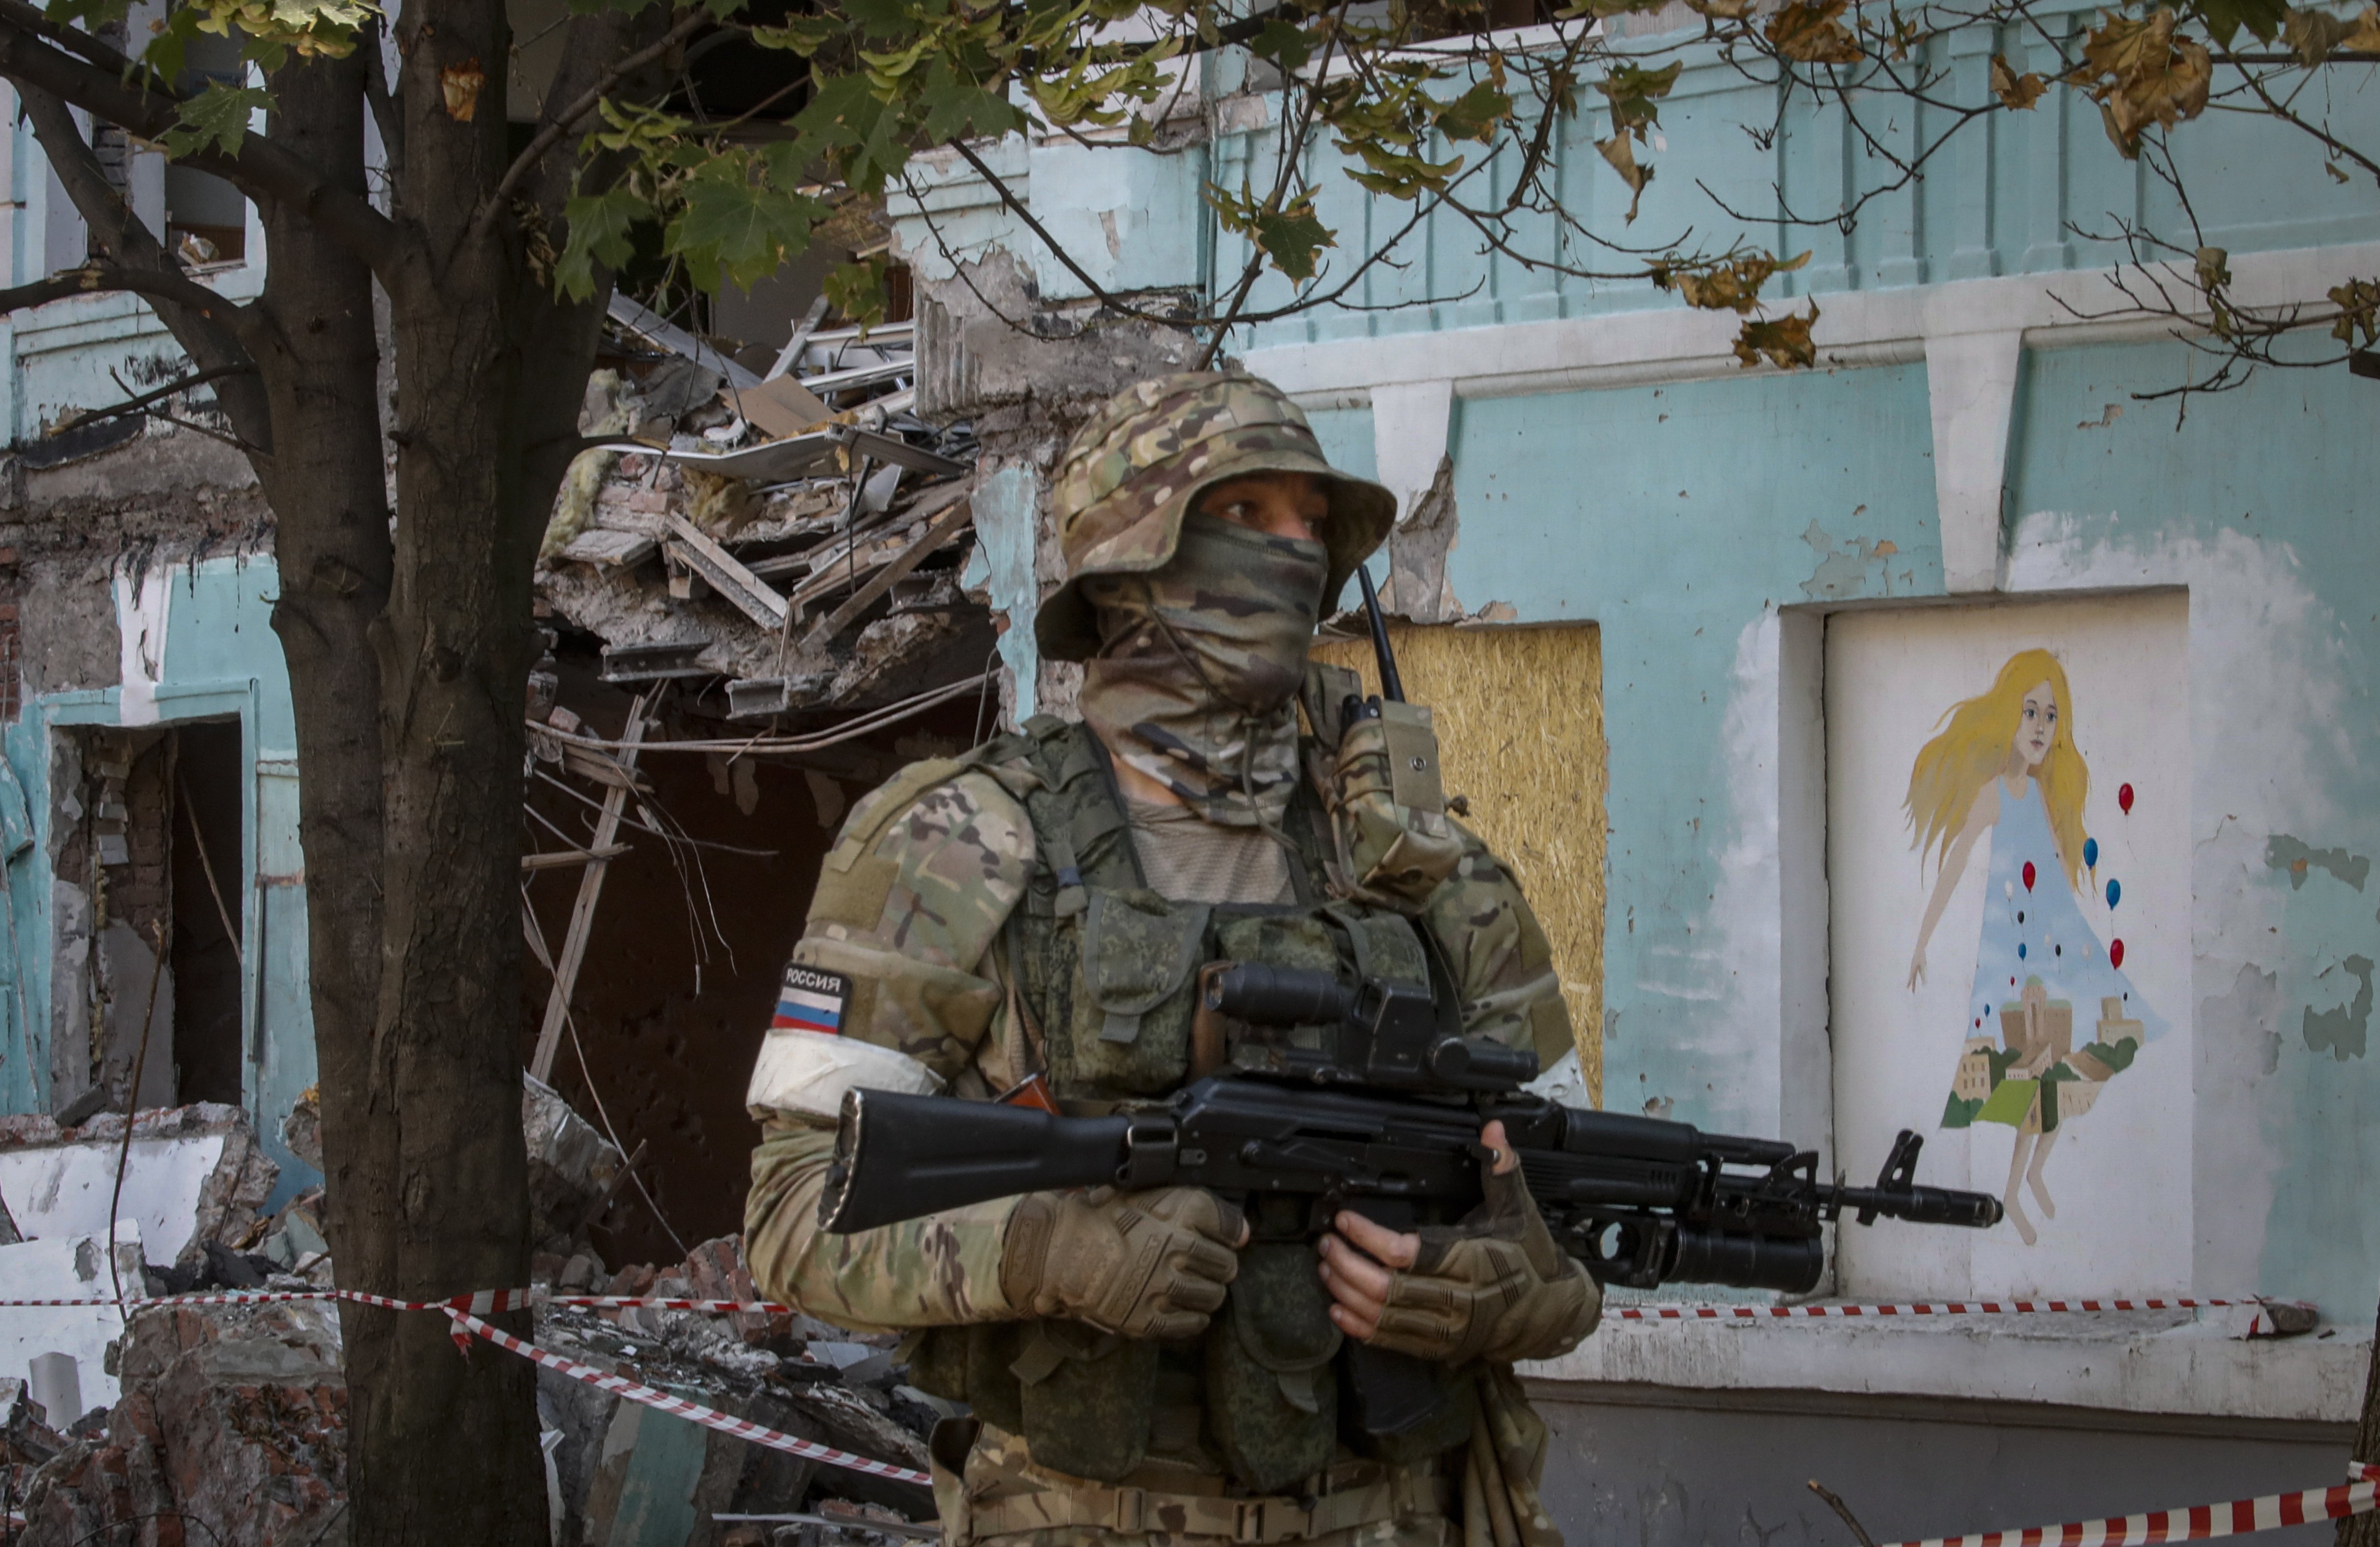 La gent fuig en massa dels bombardejos de Lugansk: "No poden suportar-ho més"